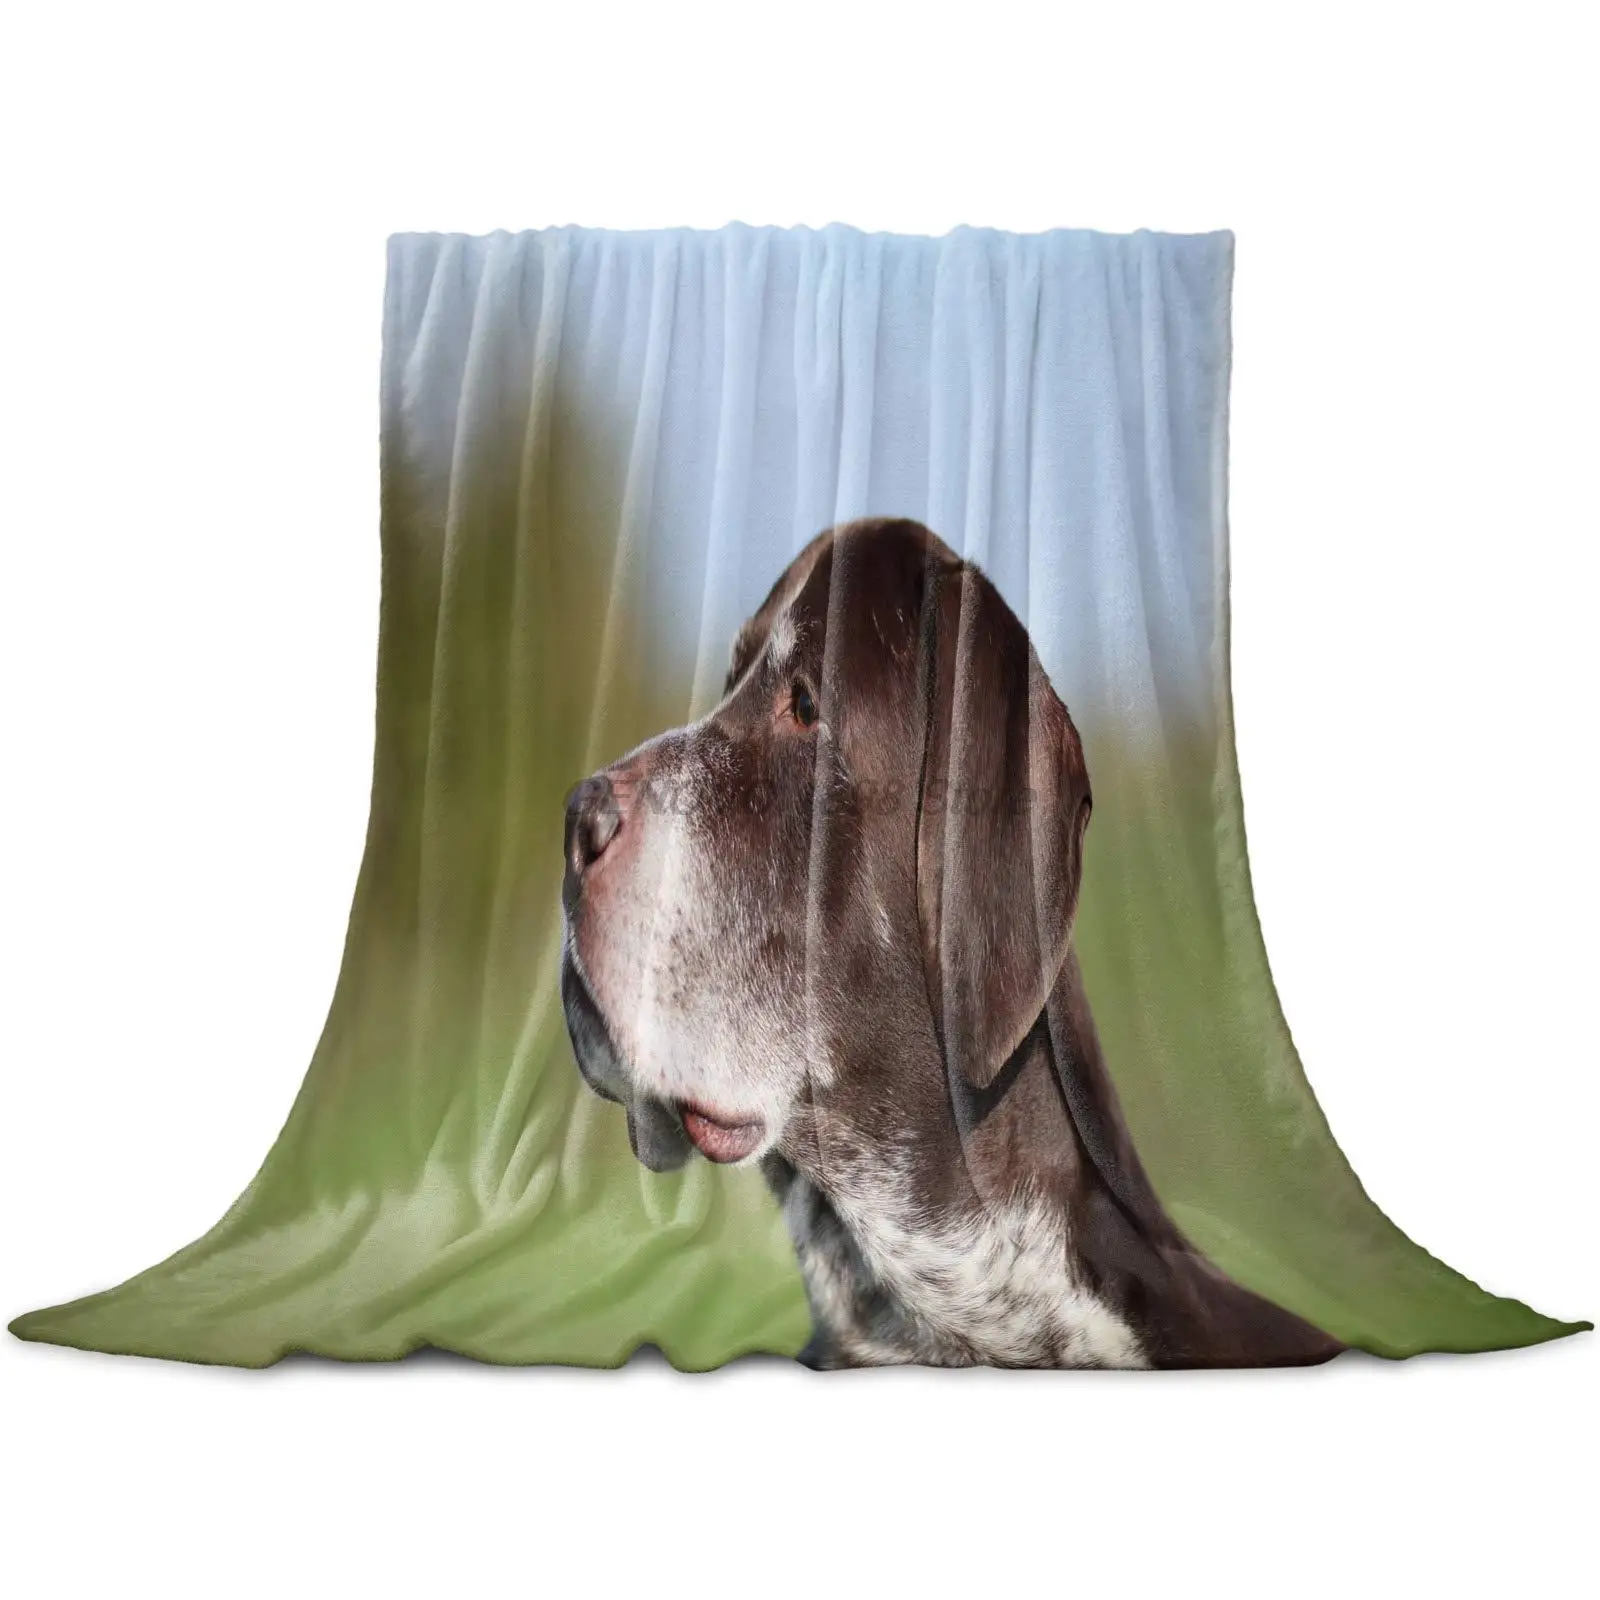 

Флисовое одеяло для дома, полноразмерное легкое фланелевое одеяло с милым рисунком собаки и животного для кровати, кушетки, гостиной, войны